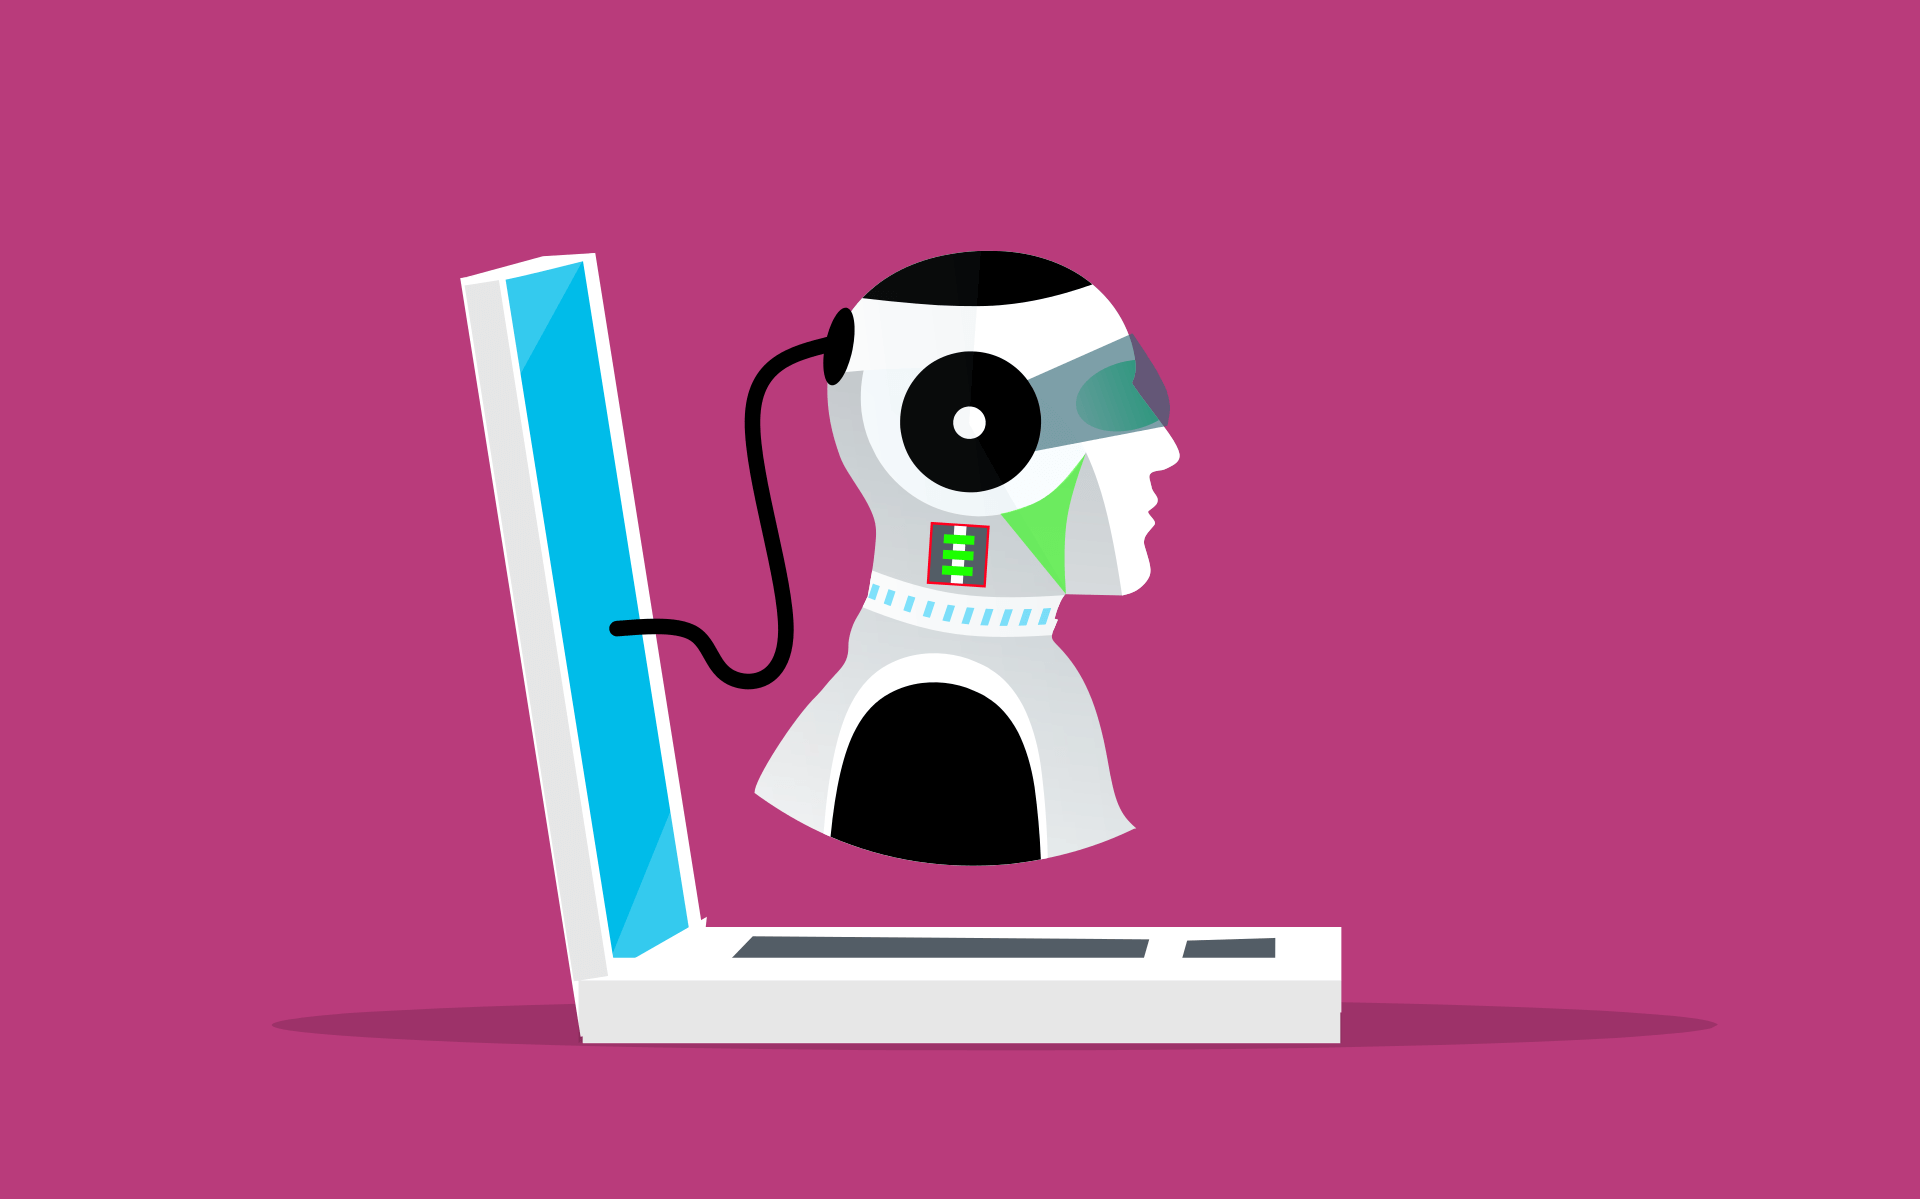 这是一张插画，展示了一个半机器人形象的客服代表，戴着耳机，从笔记本电脑屏幕中探出头来。背景为单色。